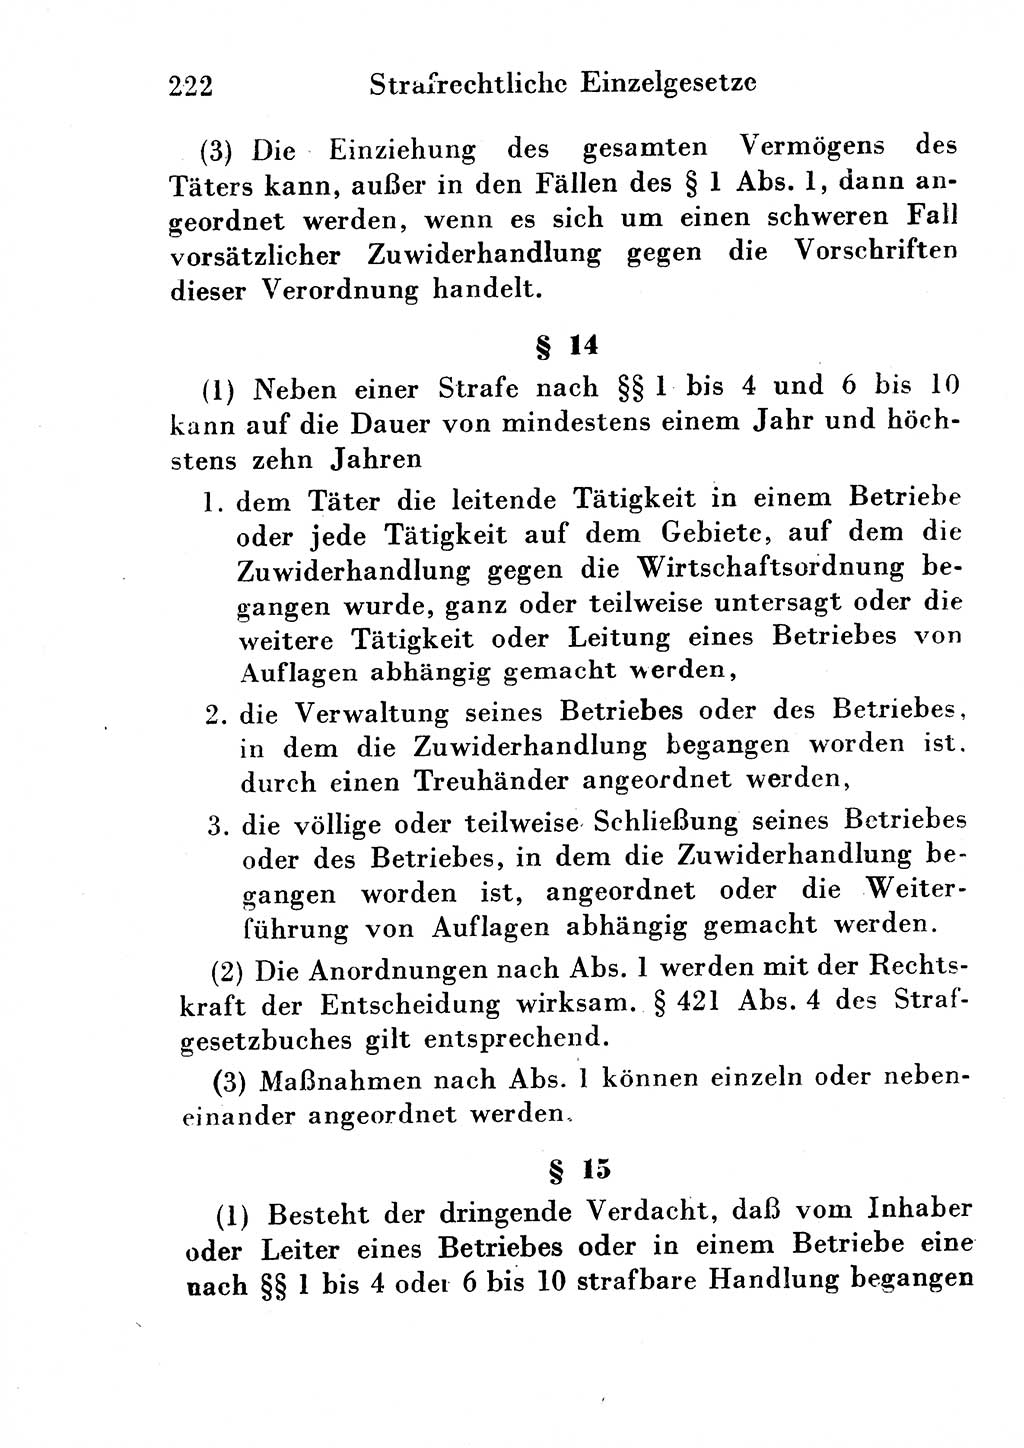 Strafgesetzbuch (StGB) und andere Strafgesetze [Deutsche Demokratische Republik (DDR)] 1954, Seite 222 (StGB Strafges. DDR 1954, S. 222)